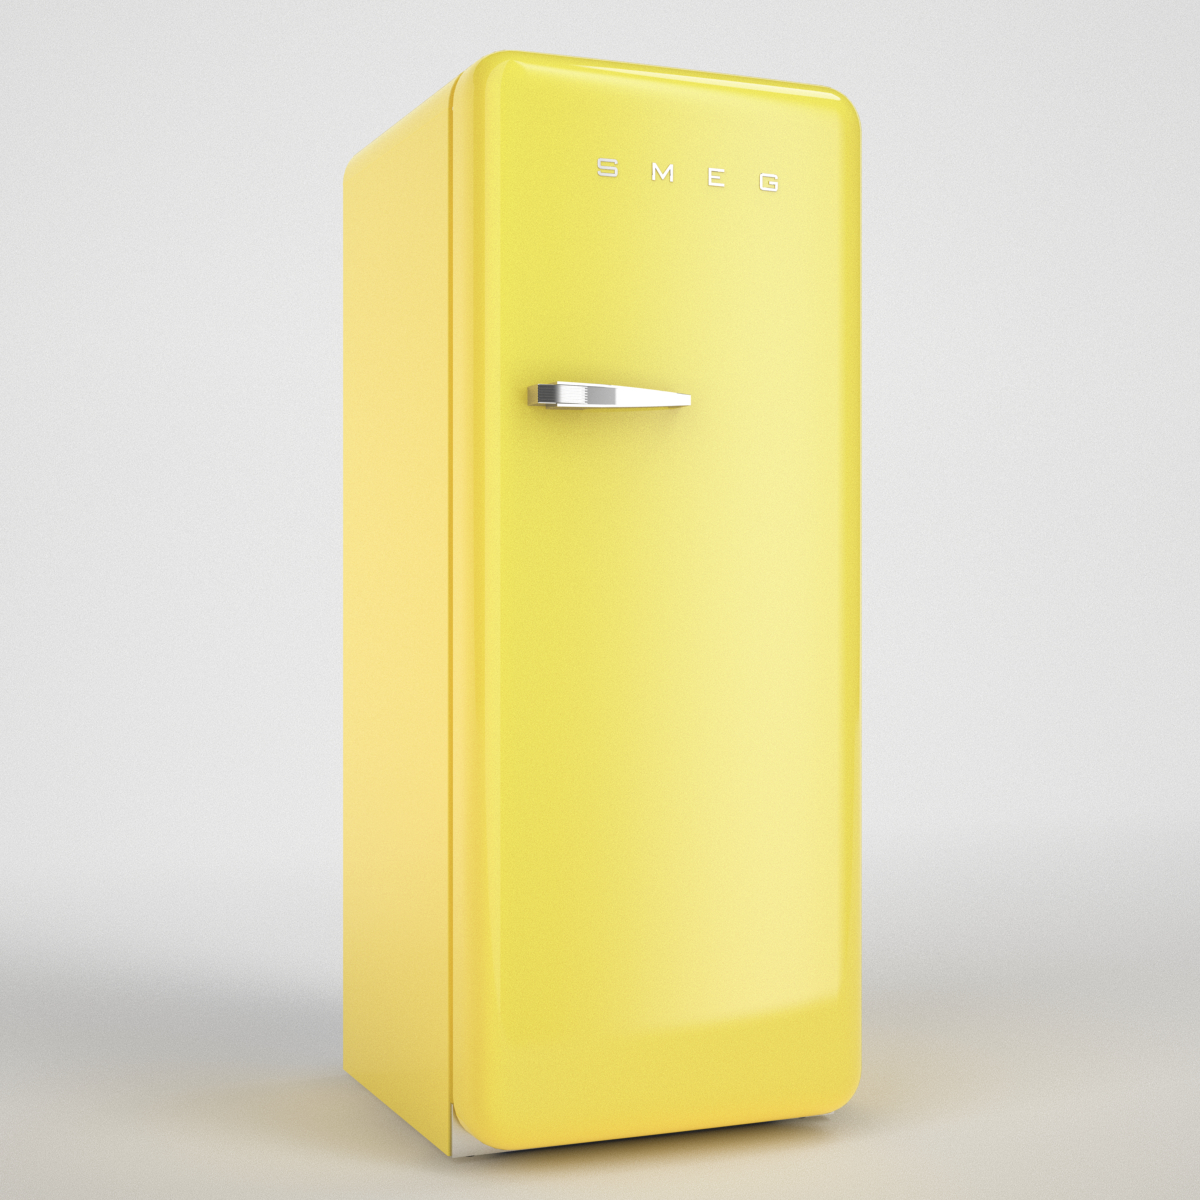 3d model of smeg refrigerator